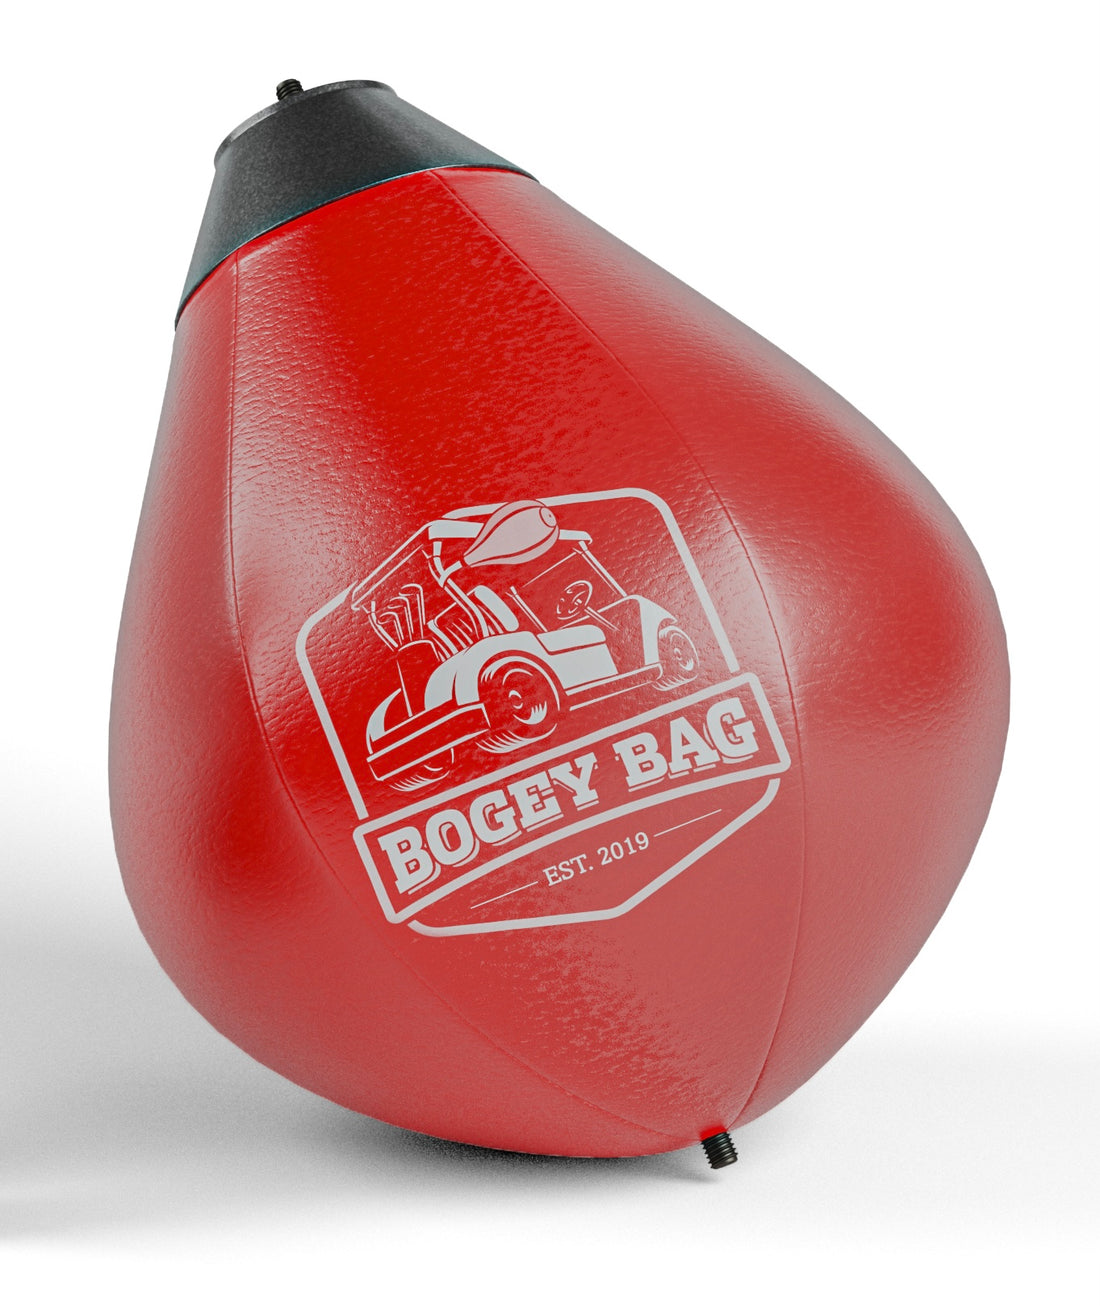 Bogey Bag - Punching Bag Replacement